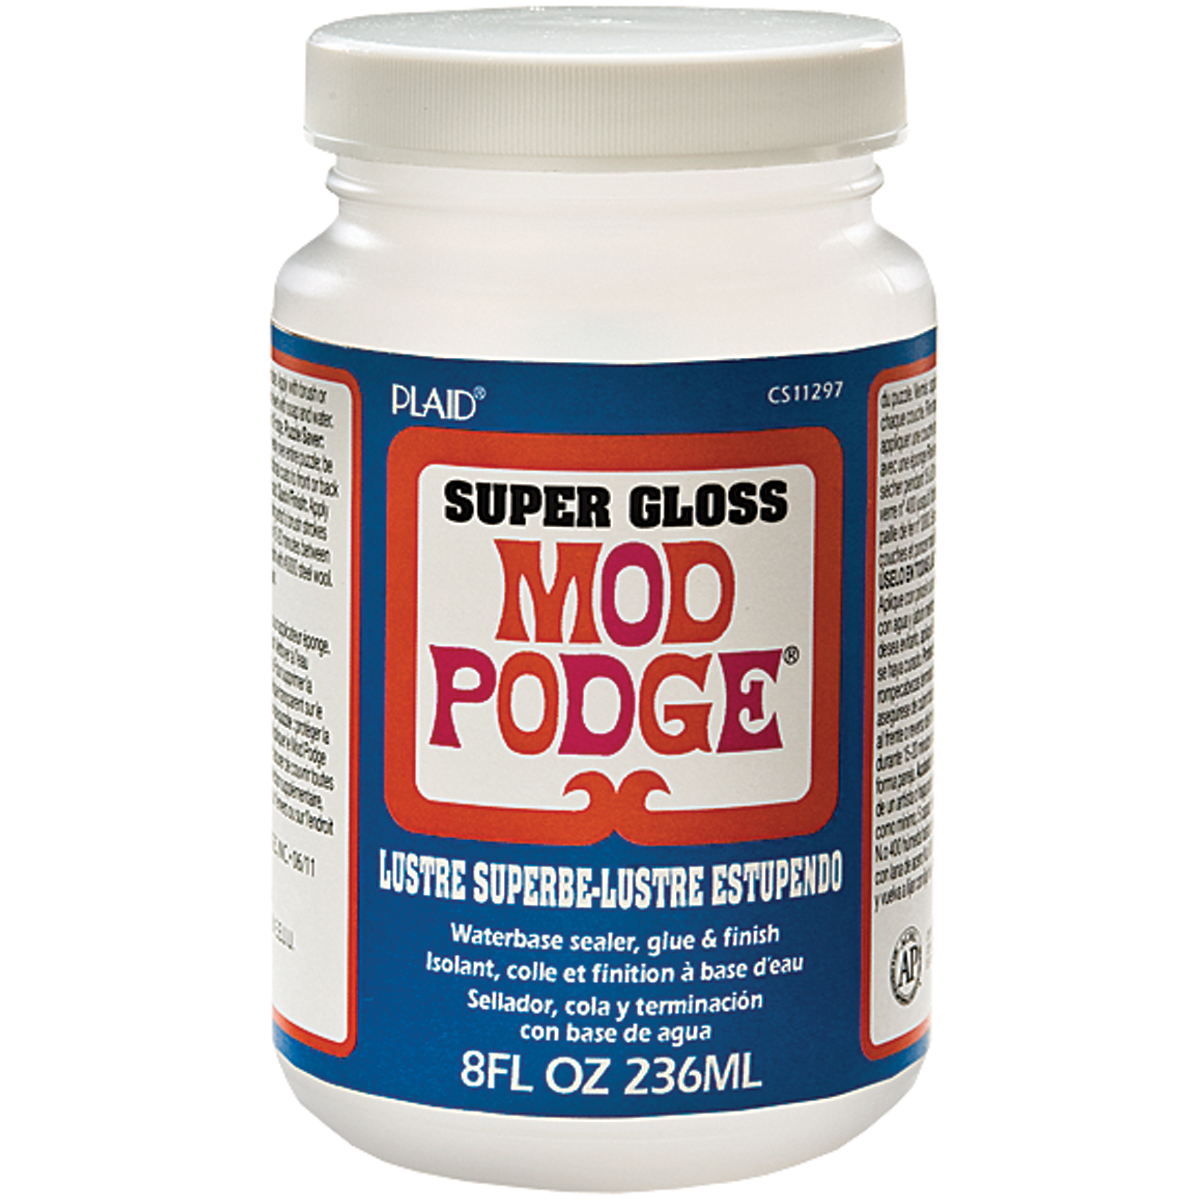 Mod Podge - 8 oz. Gloss or Matte